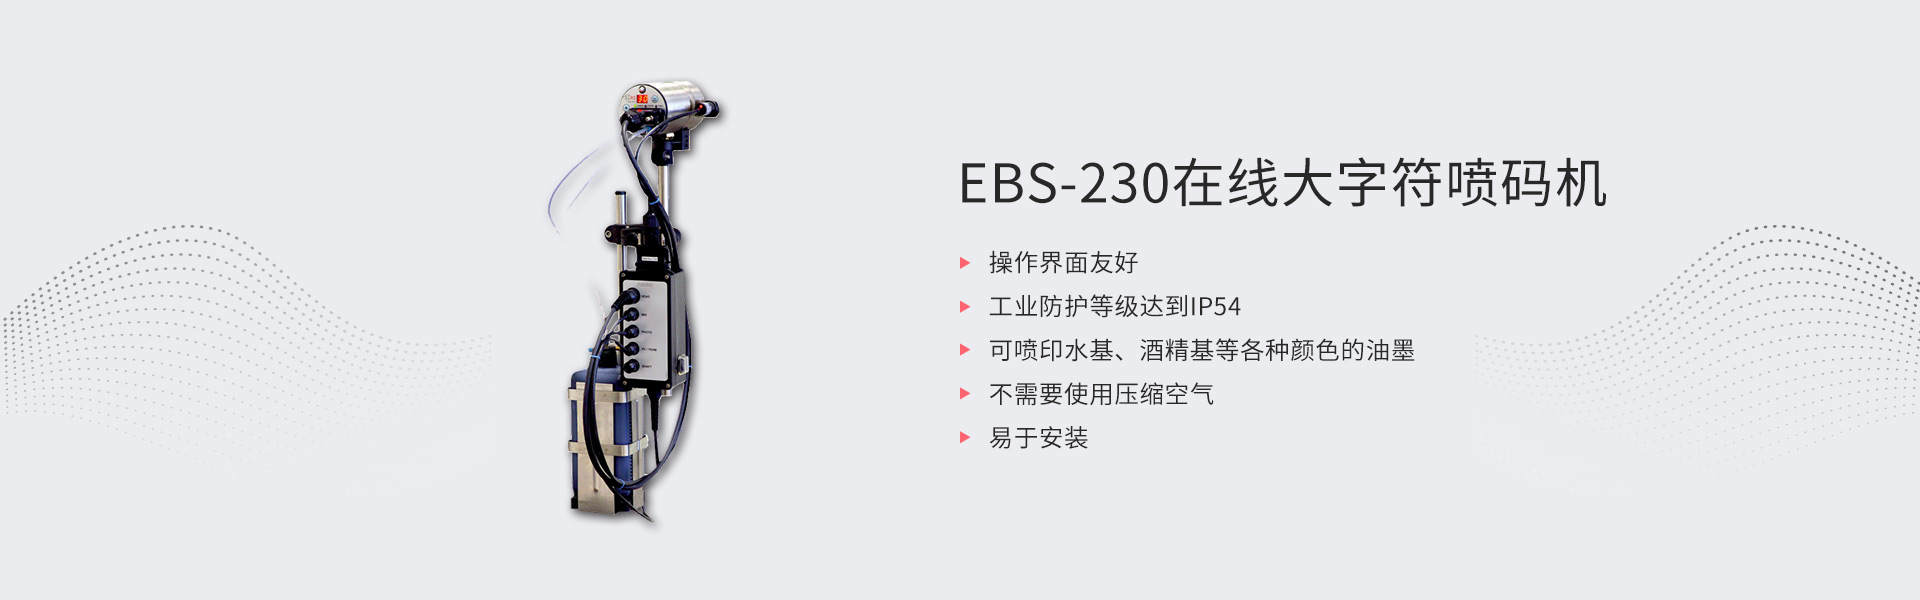 EBS-230在线大字符喷码机(图1)